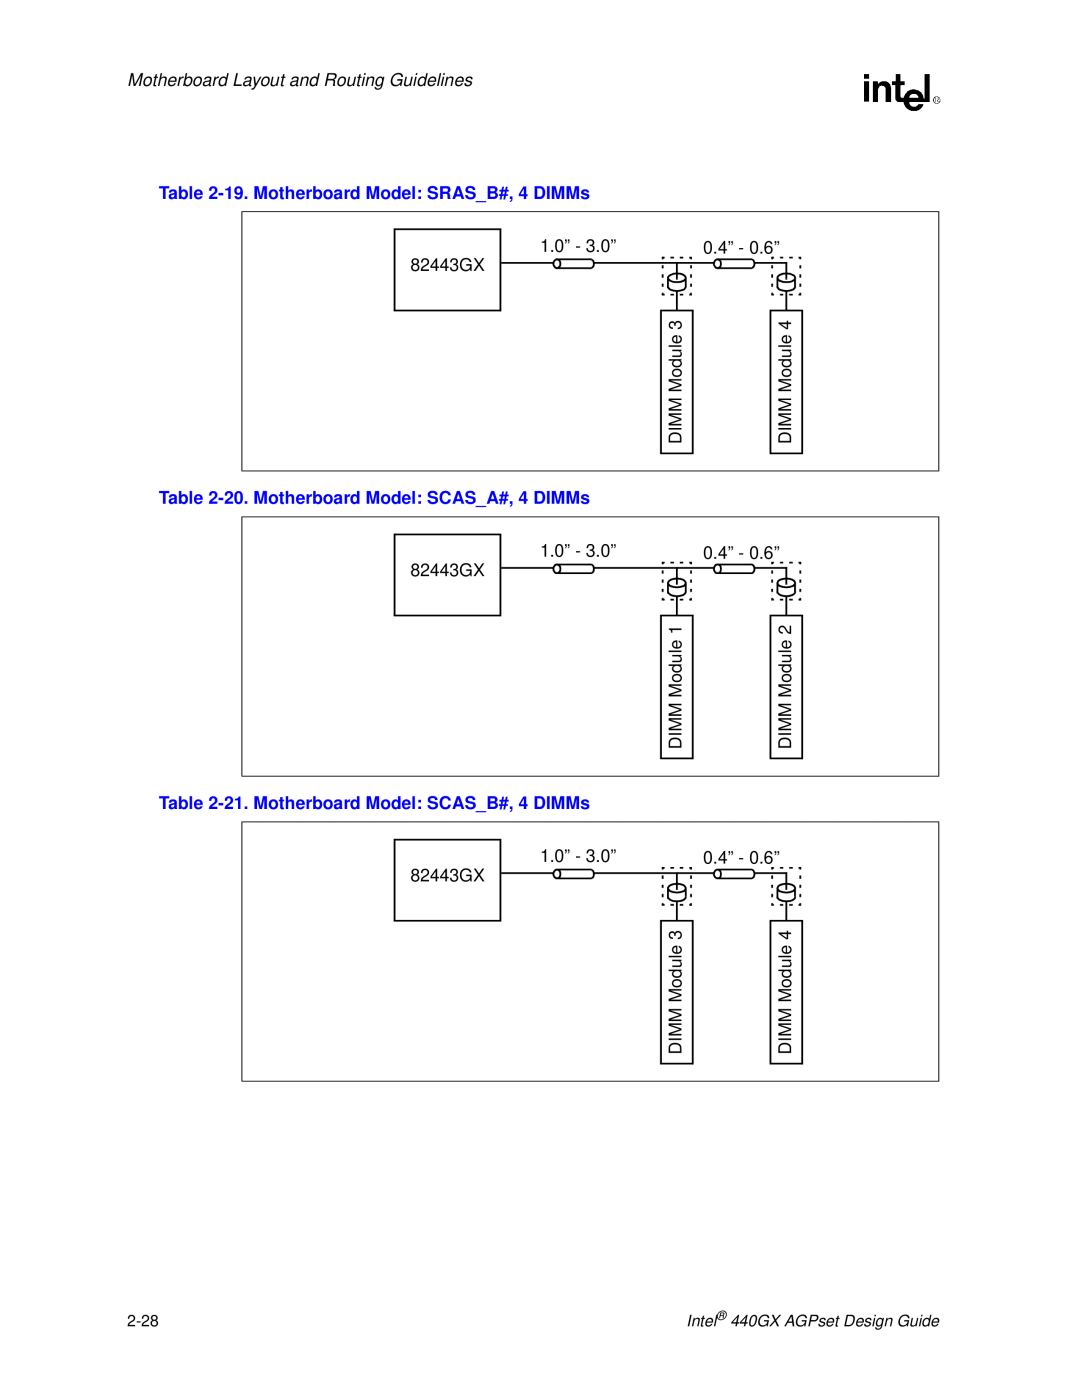 Intel 440GX manual 19. Motherboard Model SRASB#, 4 DIMMs, 20. Motherboard Model SCASA#, 4 DIMMs 